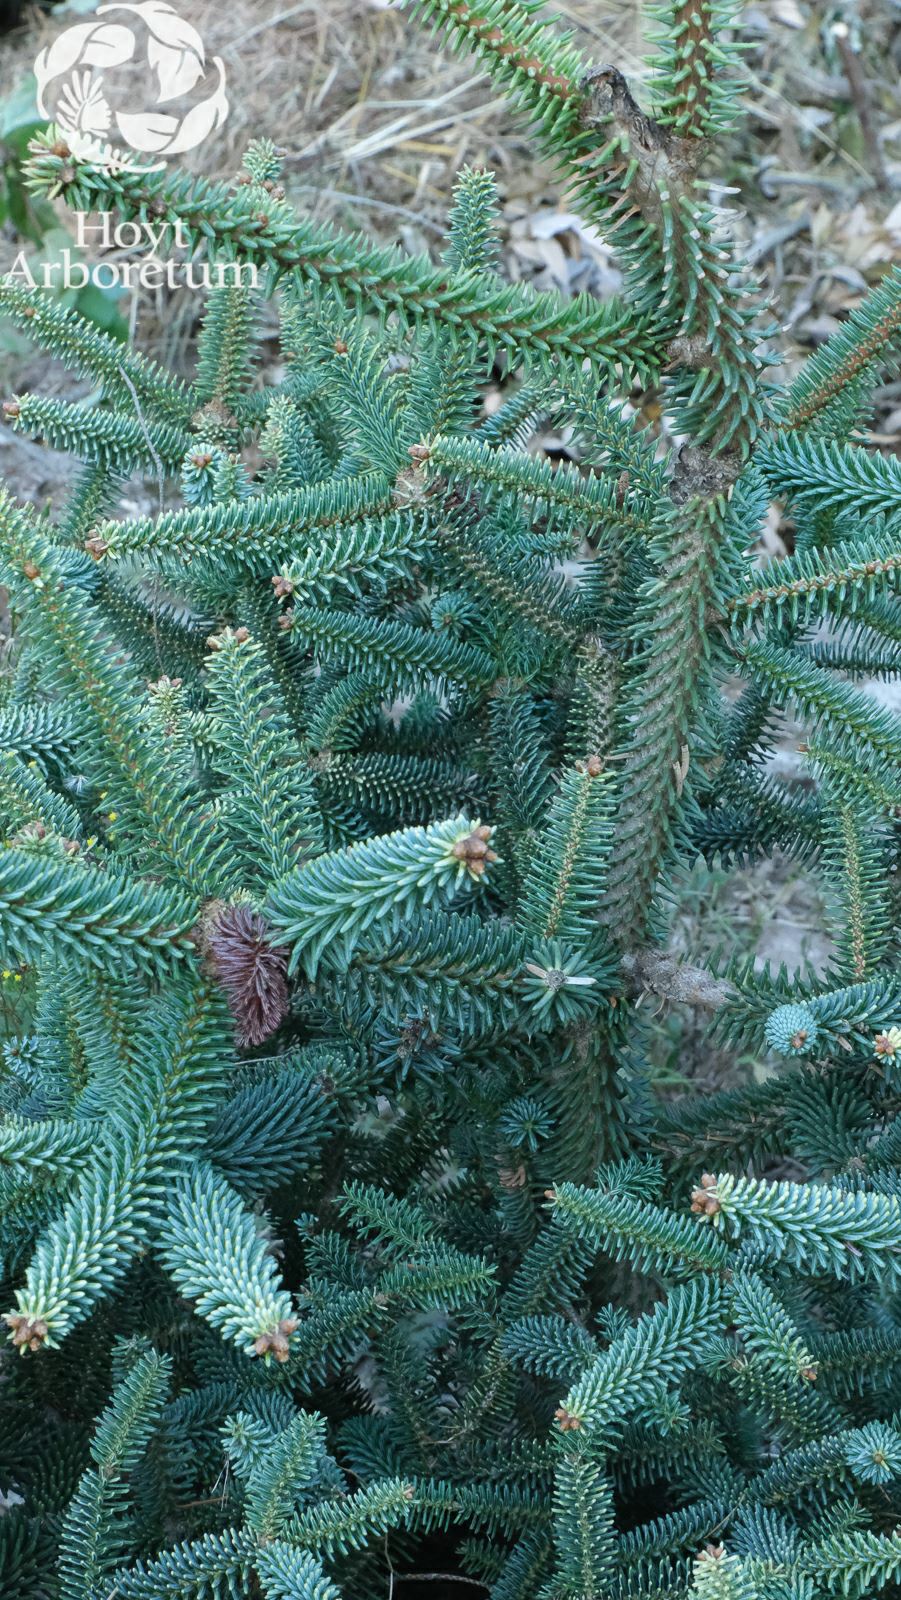 Abies pinsapo 'Aurea' - golden Spanish fir